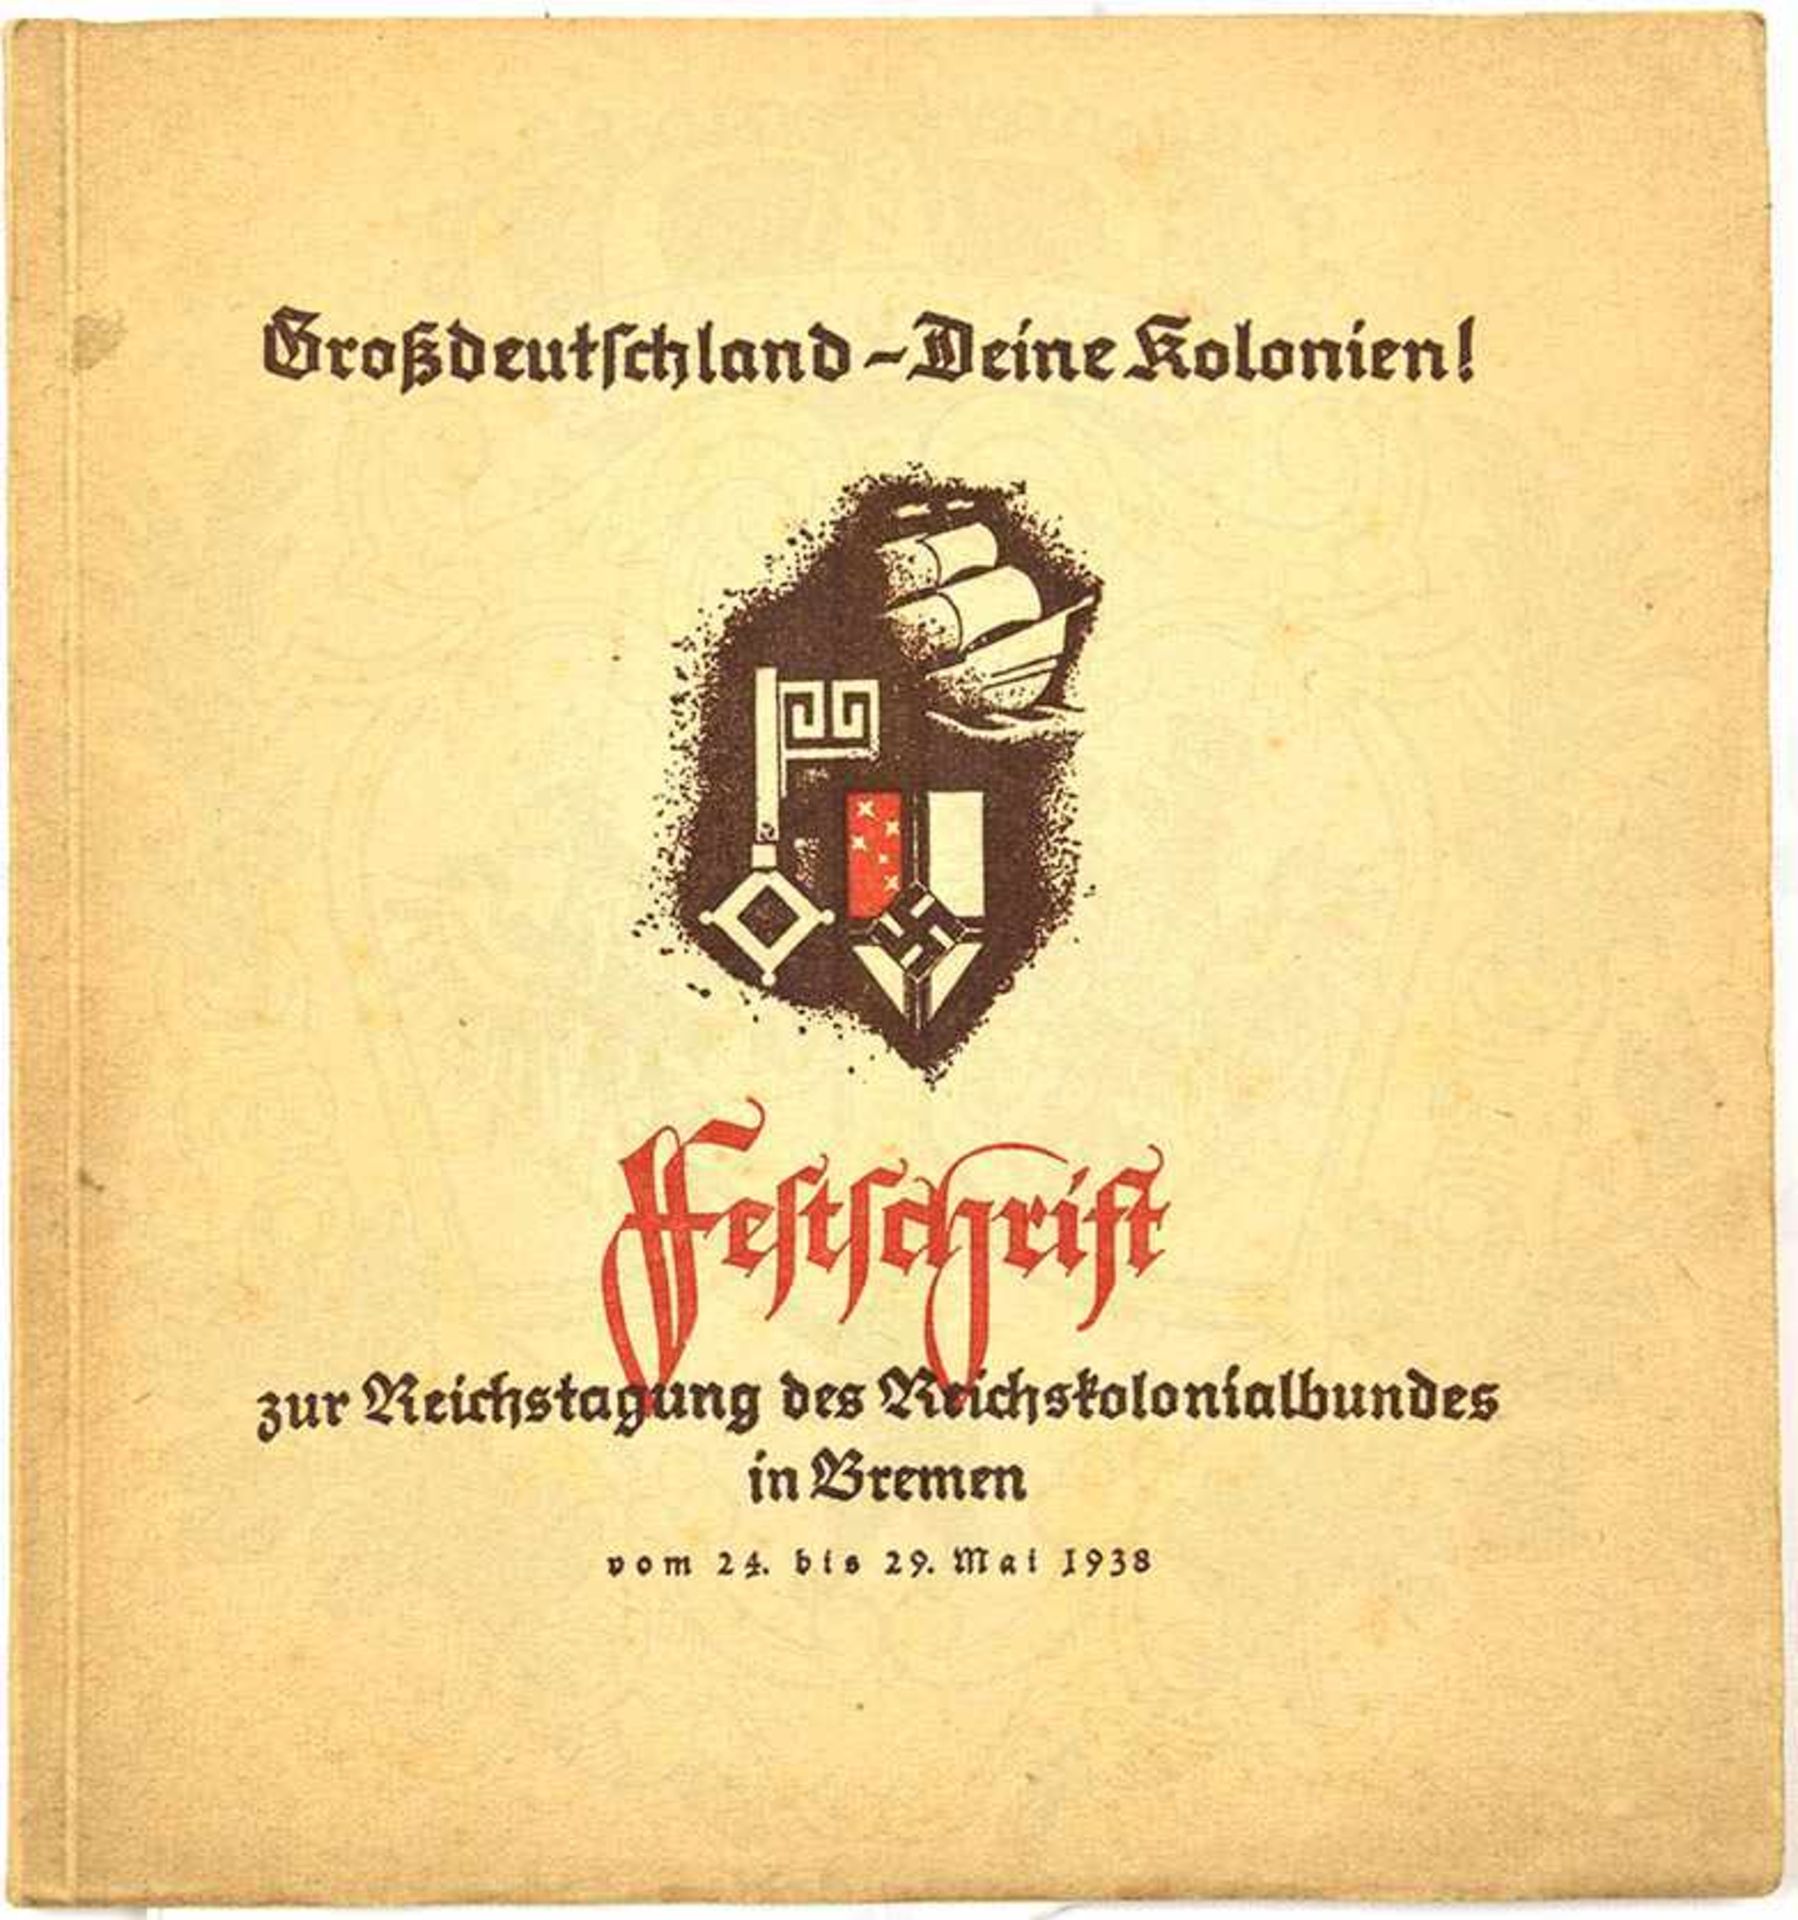 GROßDEUTSCHLAND - DEINE KOLONIEN!, „Festschrift z. Reichstagung d. Reichskolonial-Bundes in Bremen